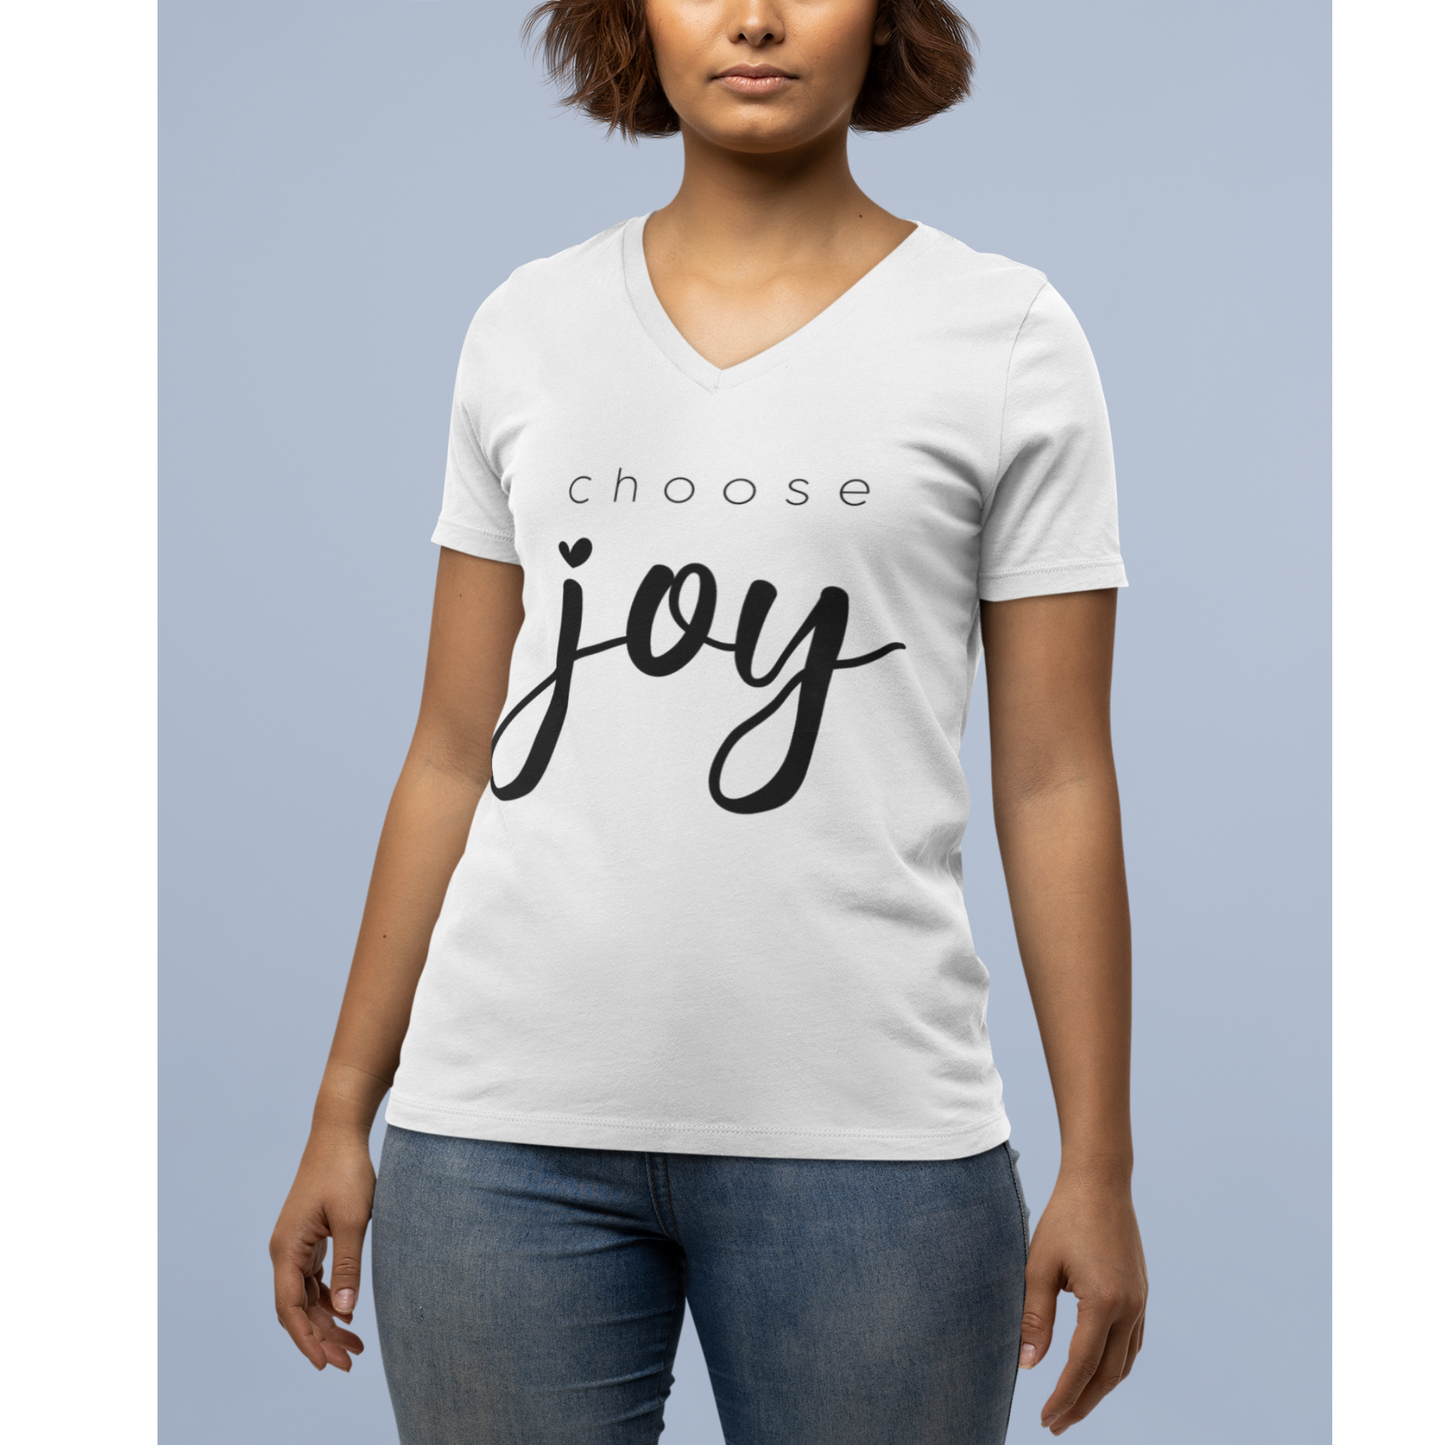 Jesus Joy Tee, The Joy of the Lord Tee, Choosing Joy, Living in my Joy T-Shirt